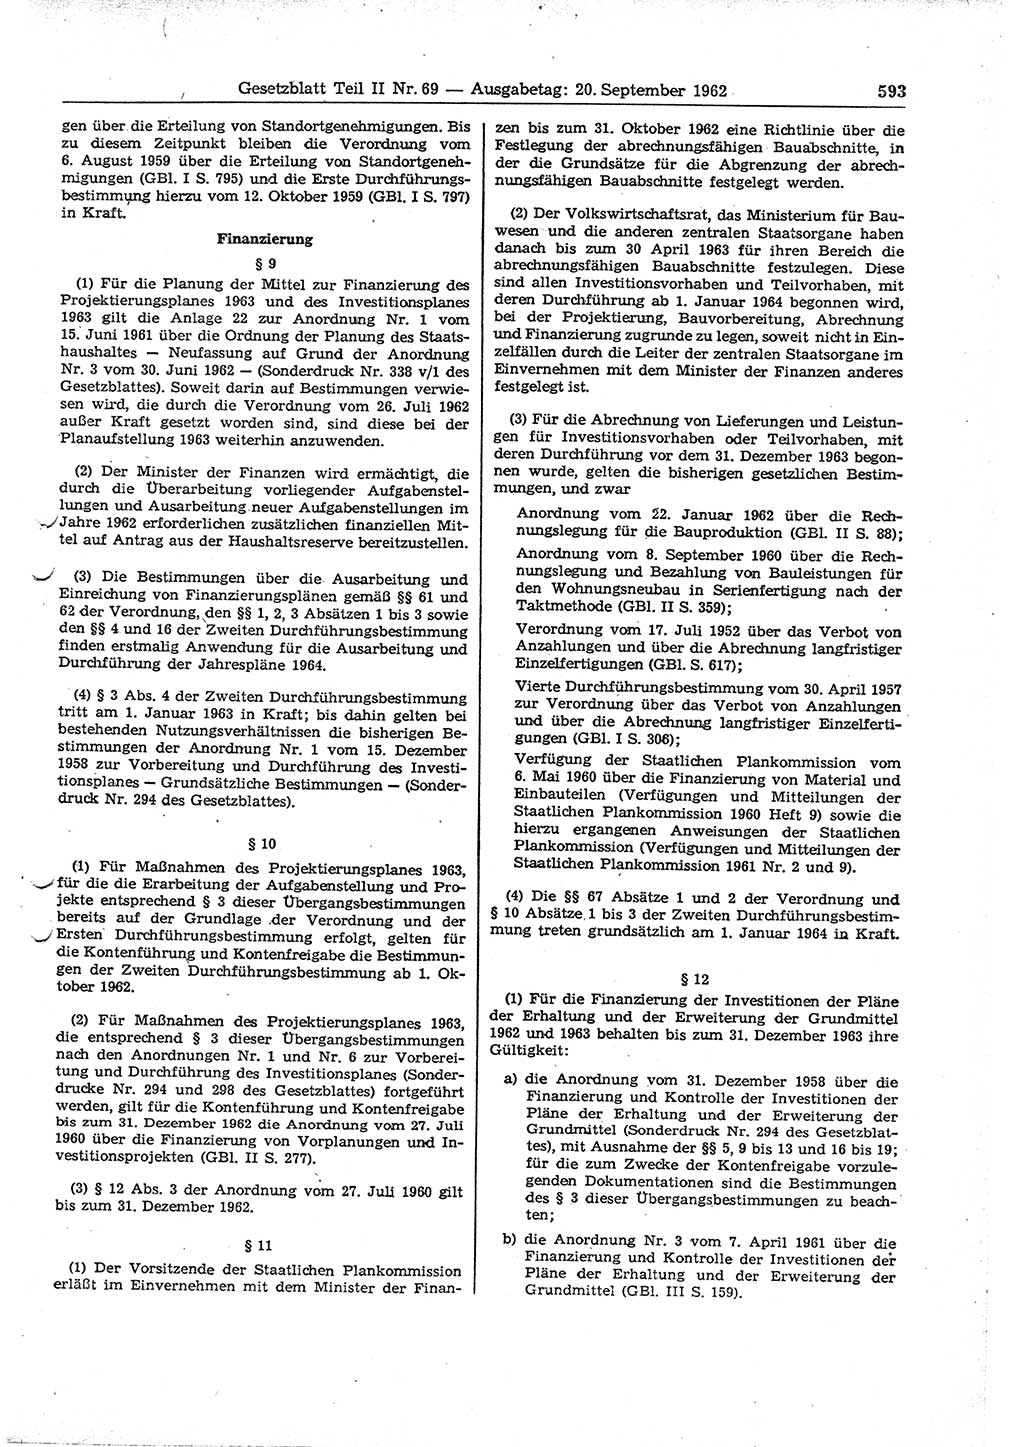 Gesetzblatt (GBl.) der Deutschen Demokratischen Republik (DDR) Teil ⅠⅠ 1962, Seite 593 (GBl. DDR ⅠⅠ 1962, S. 593)